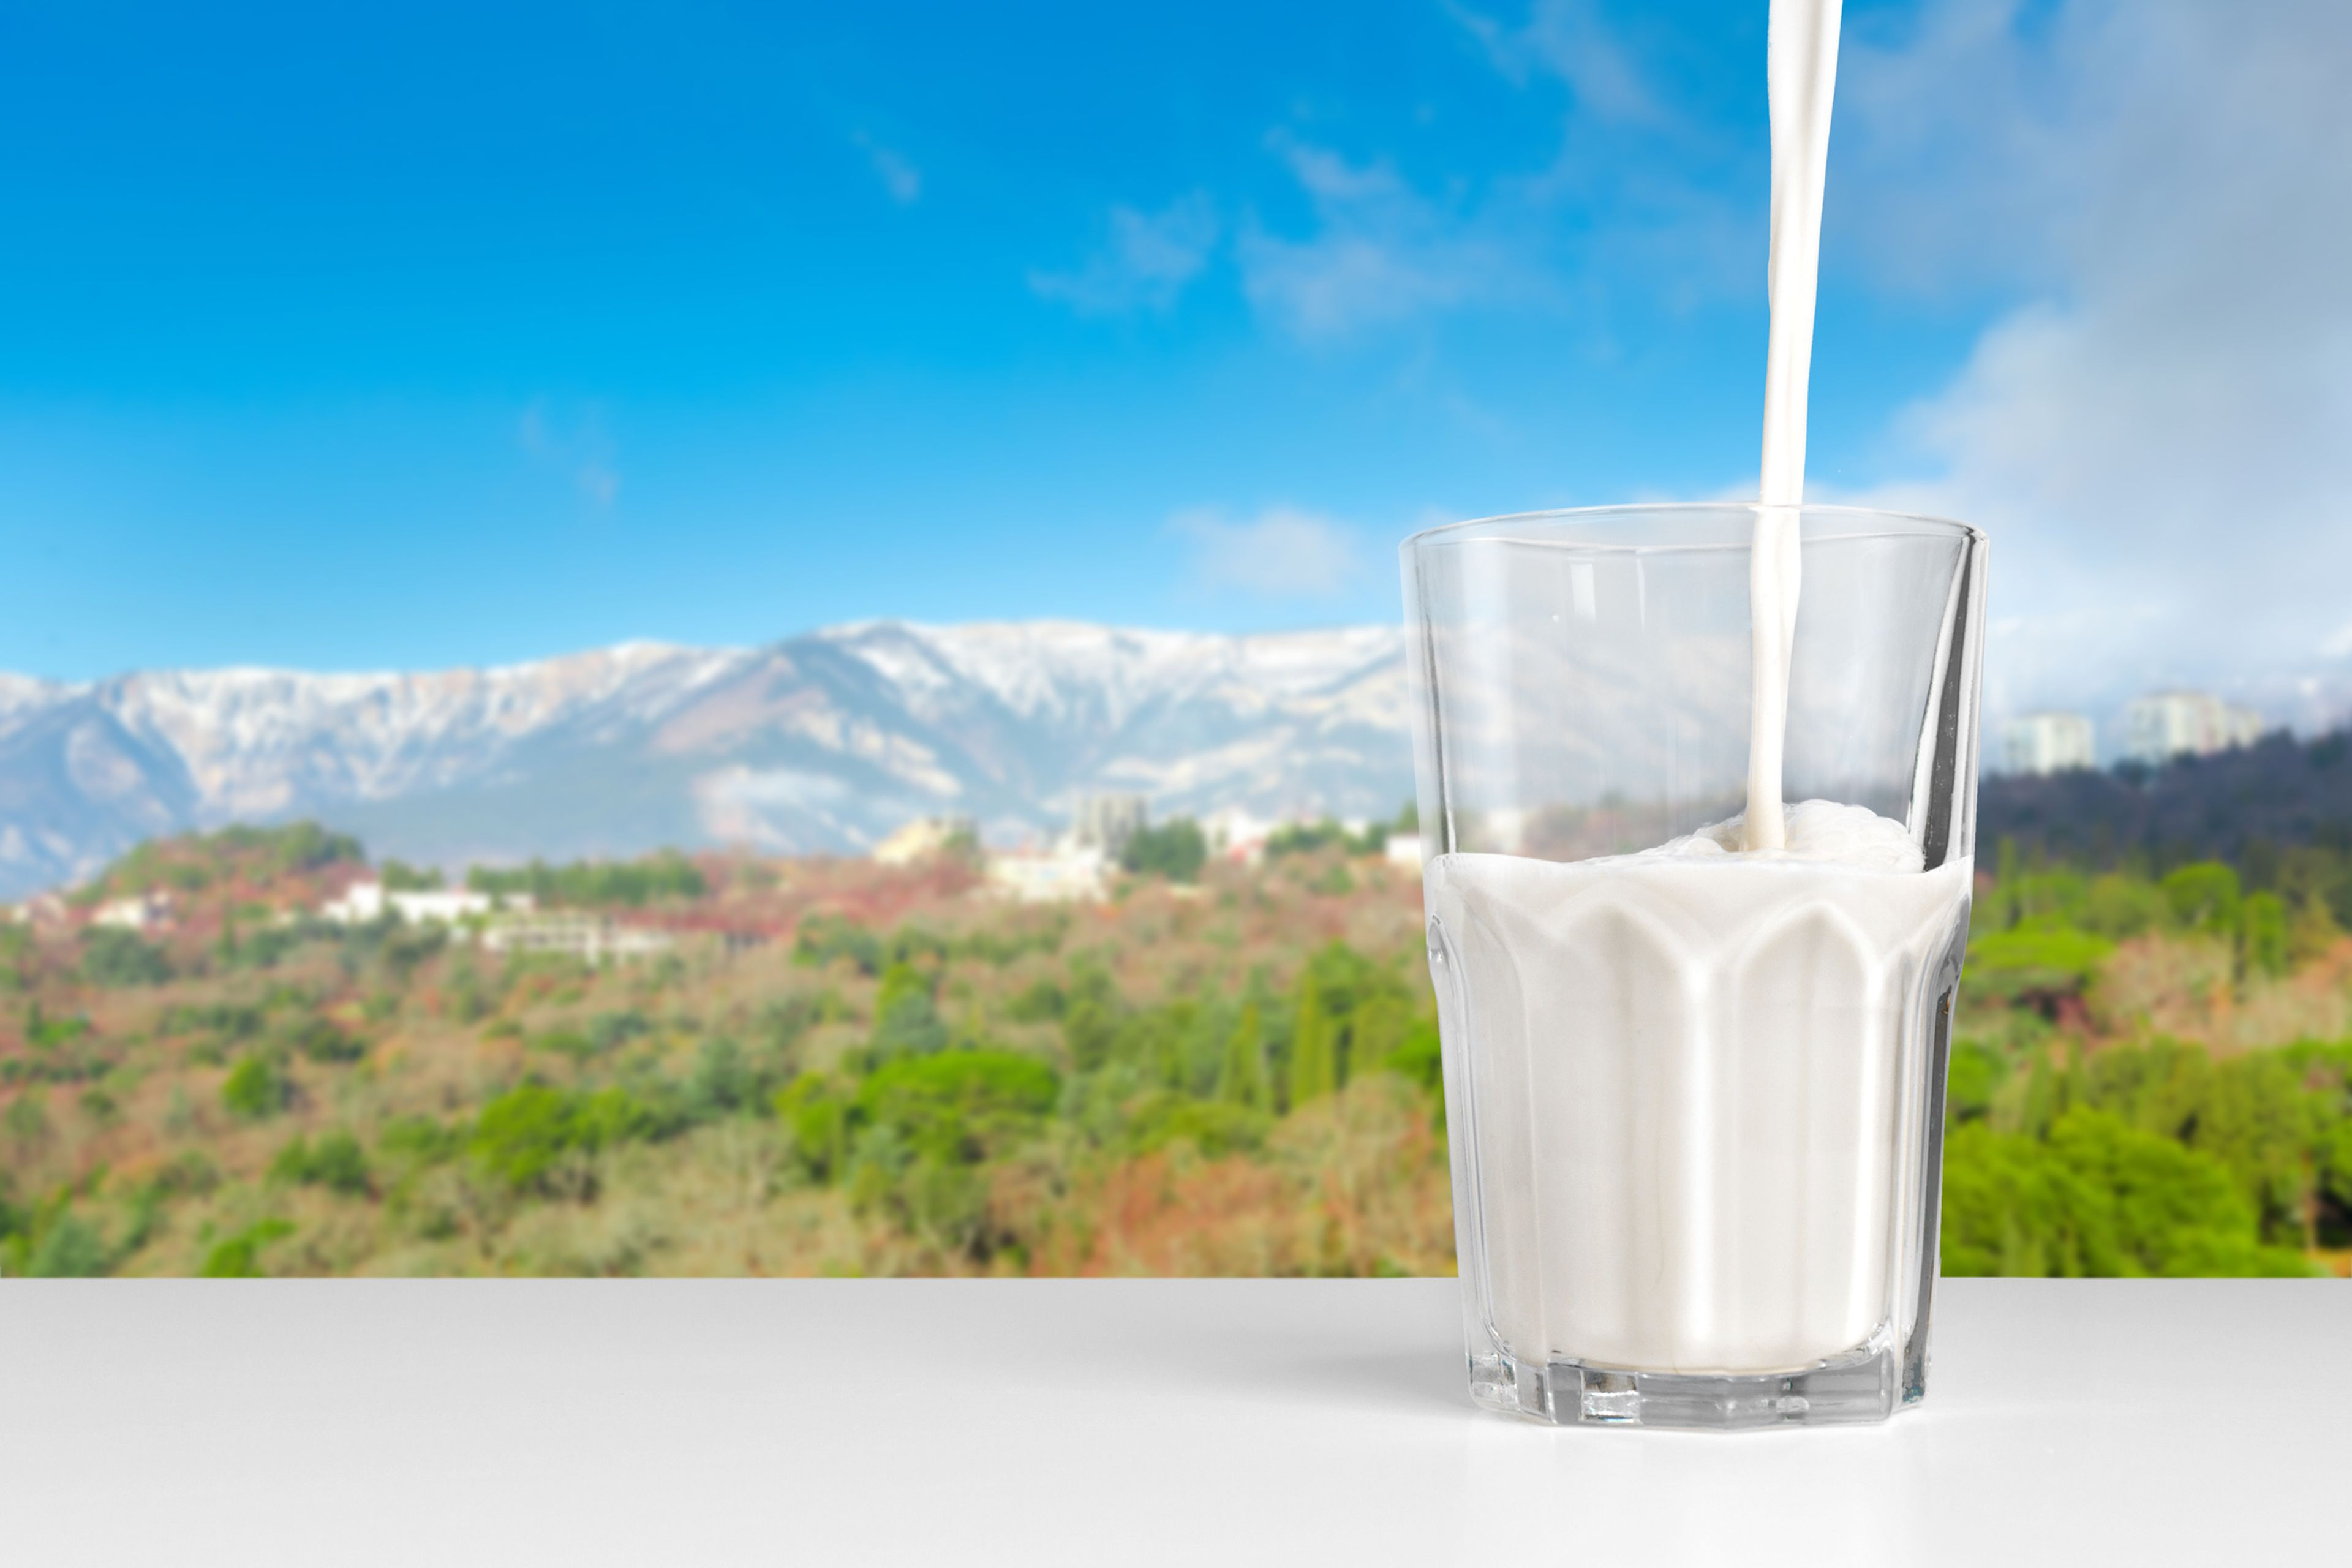 La leche semidesnatada no adelgaza más que la entera, según un experto